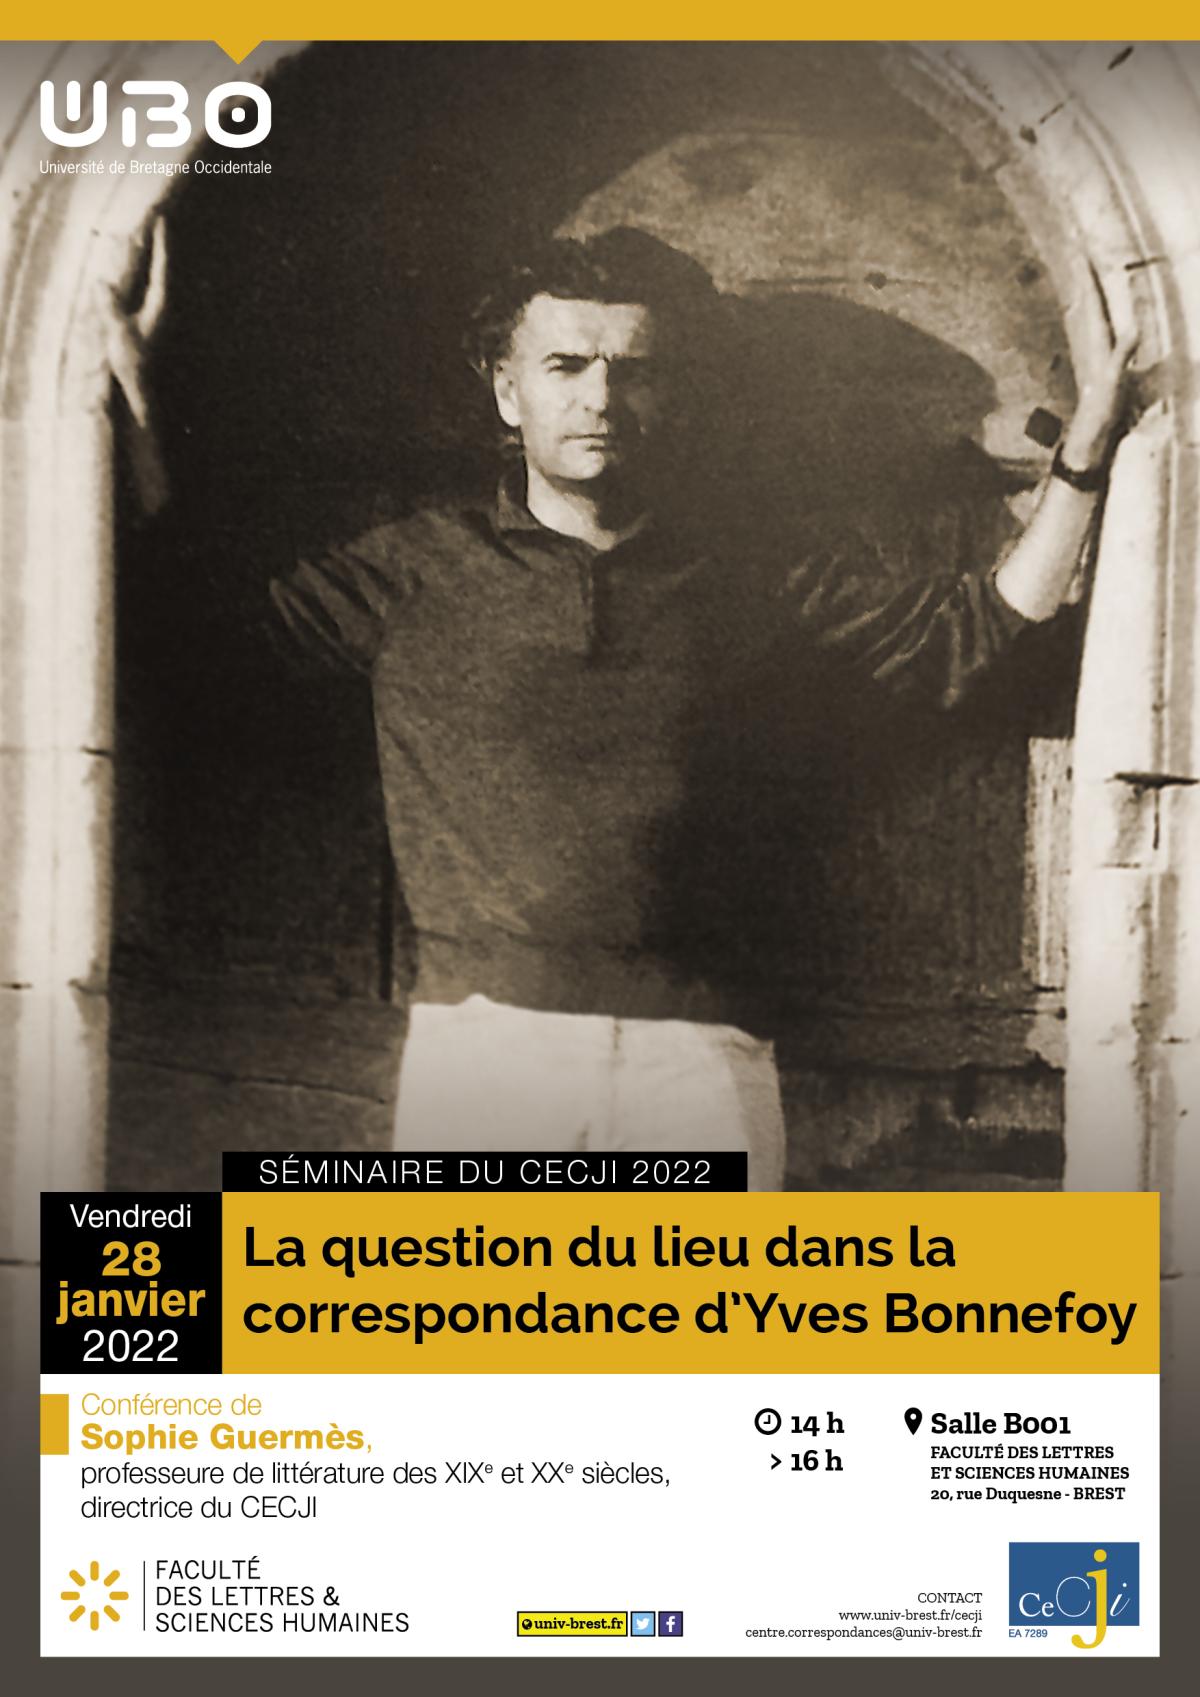 La question du lieu dans la correspondance d'Yves Bonnefoy